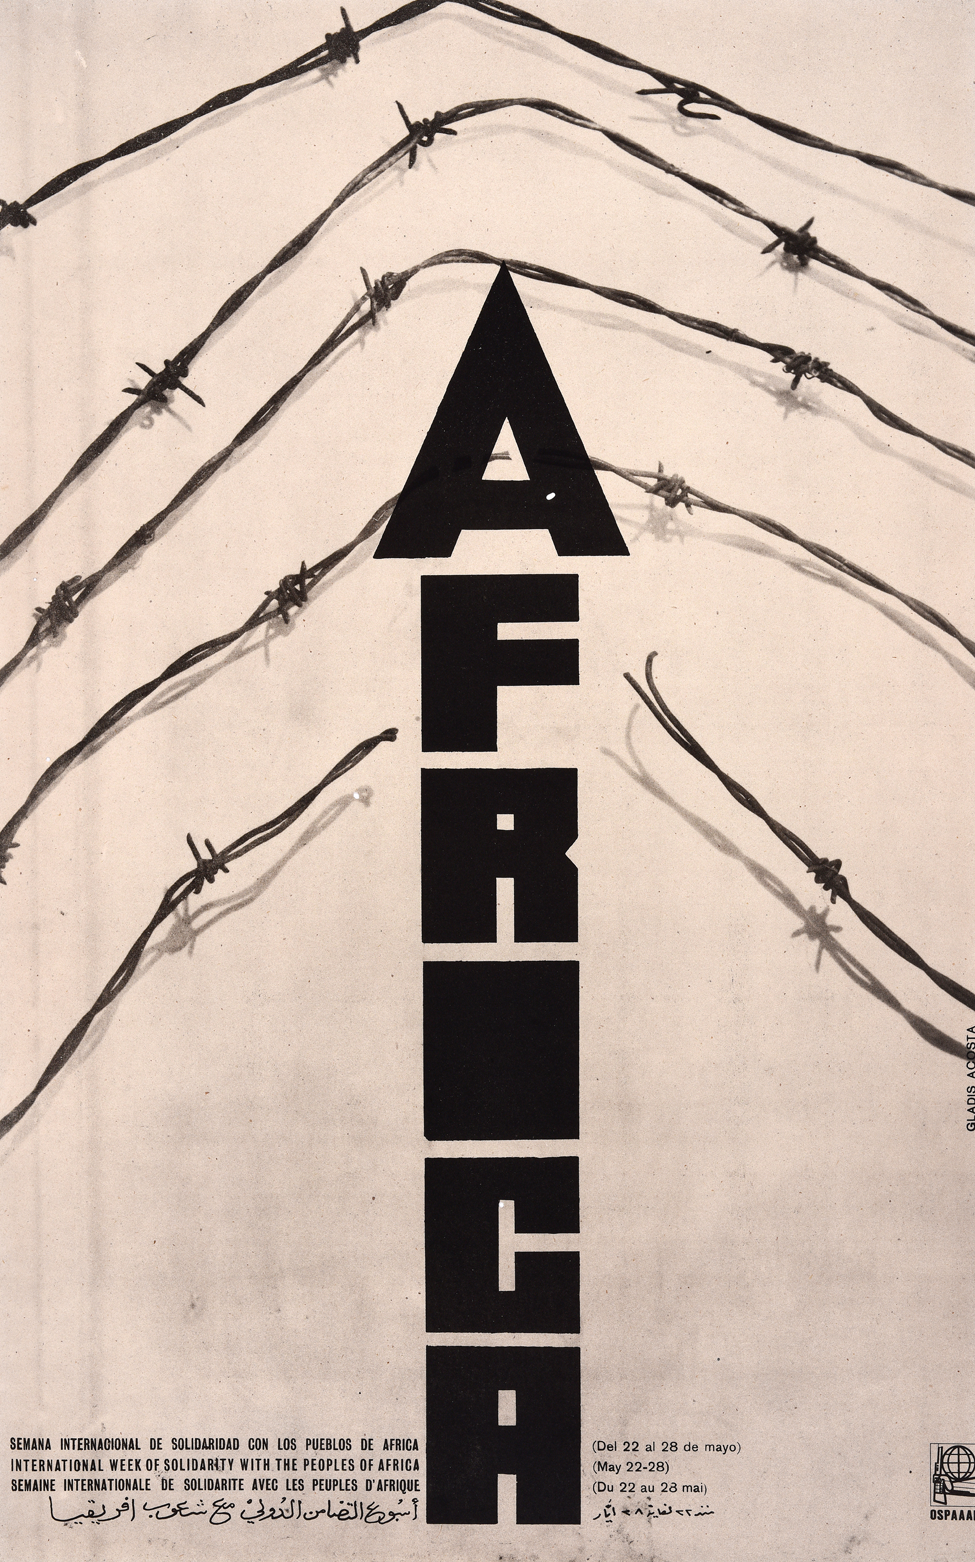 Плакат Ospaal под названием «Международная неделя солидарности с народами Африки, 1970 год», на котором изображено слово «Африка», прорывающееся через колючую проволоку